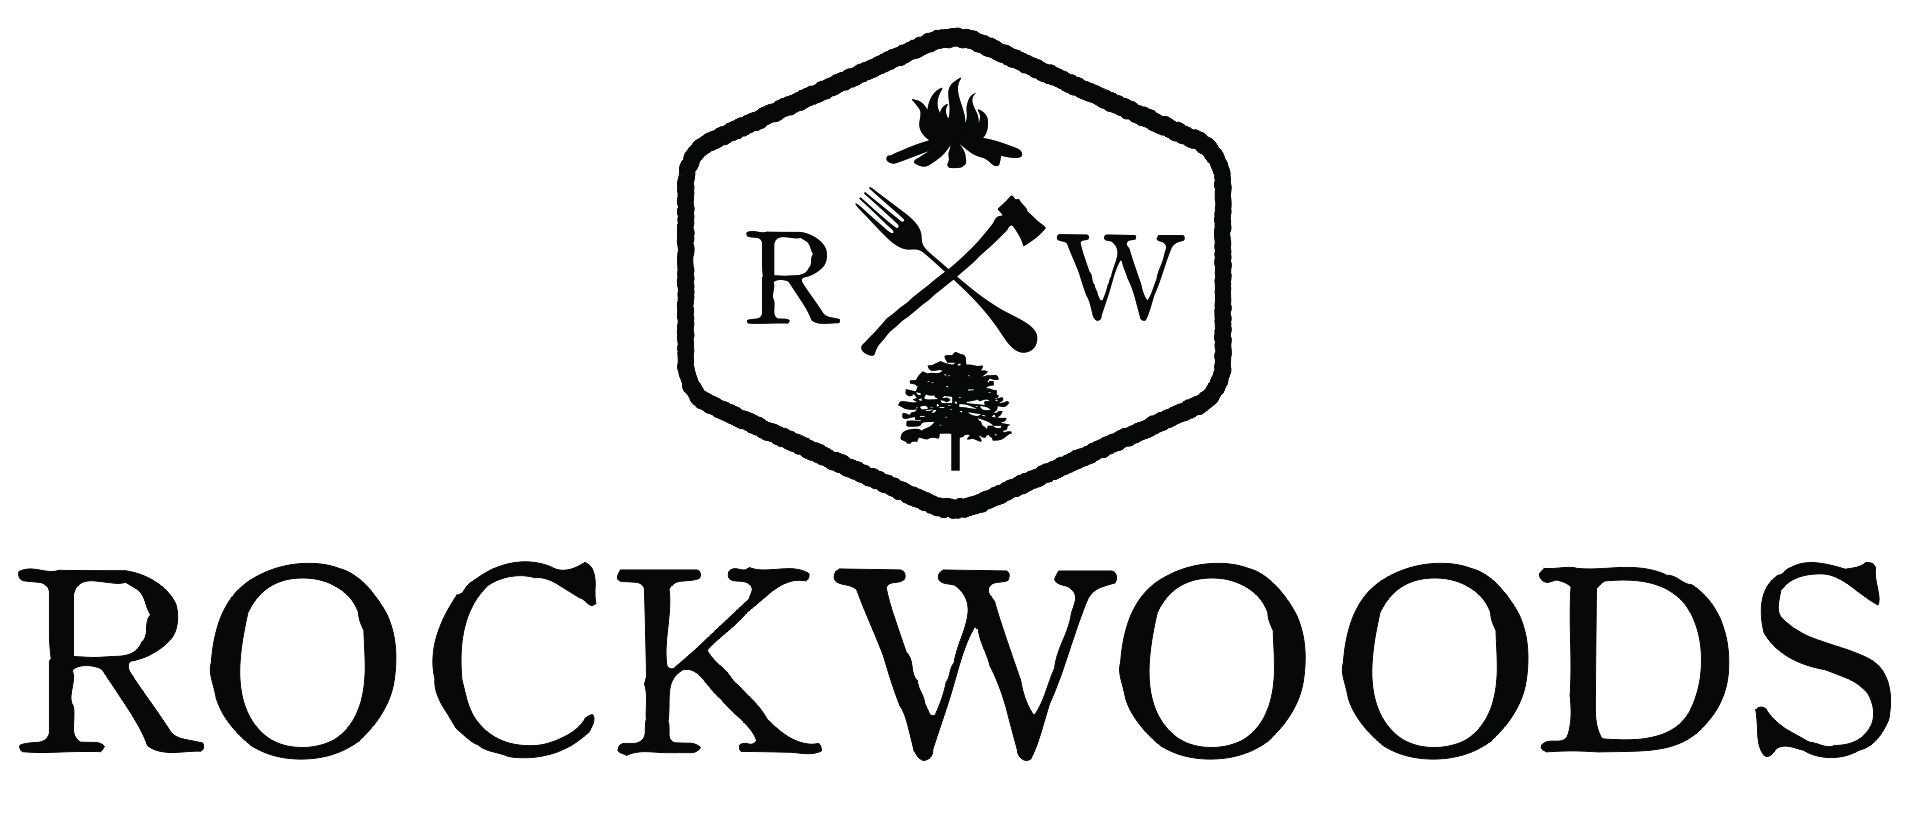 Rockwoods